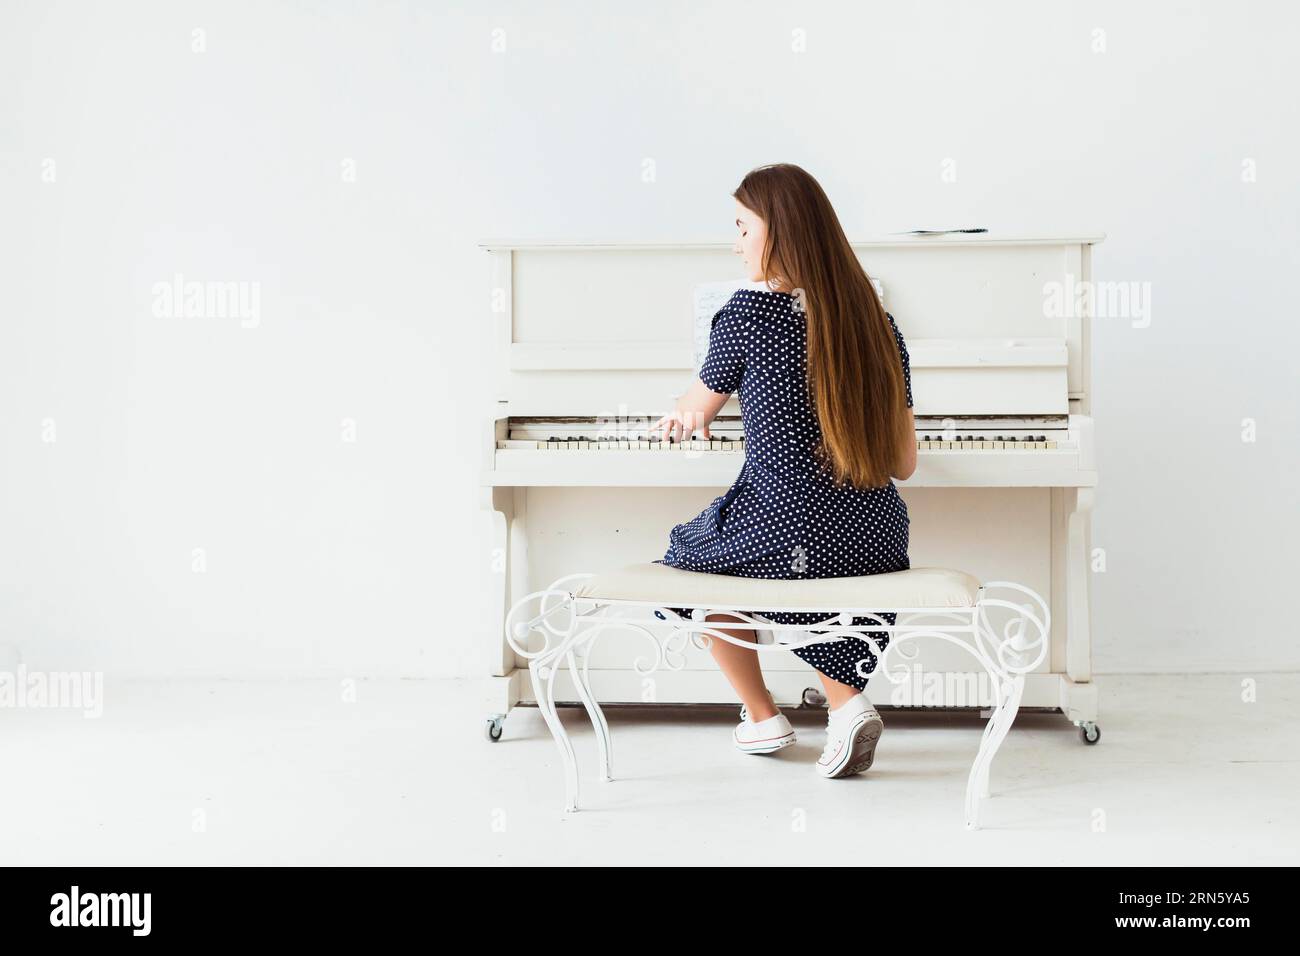 Rückansicht junge Frau mit langen Haaren, die Klavier gegen weiße Wand spielt Stockfoto